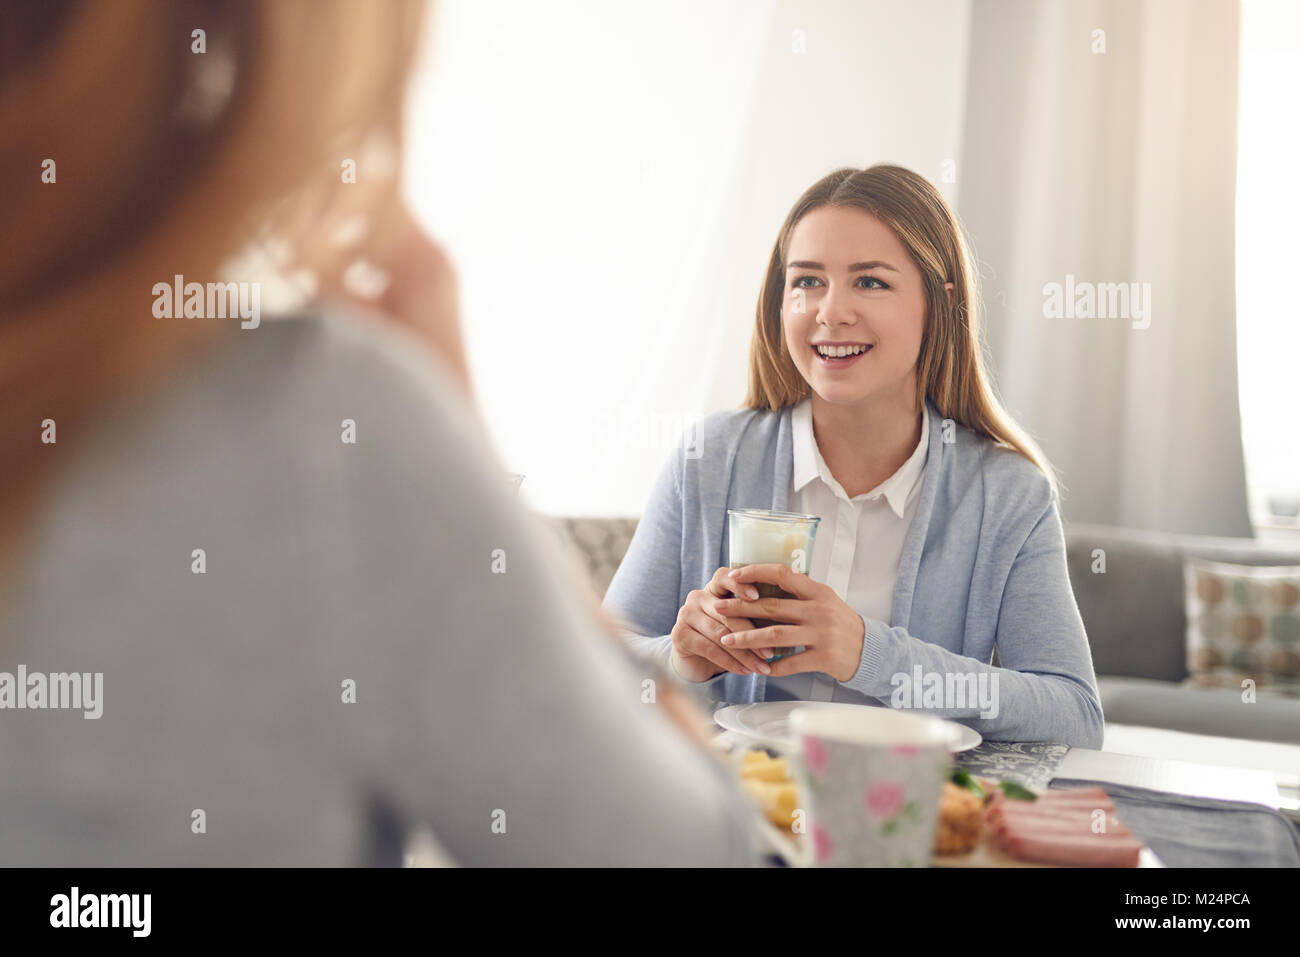 Happy smiling adolescent ayant le petit déjeuner à la maison assis à la table avec une boisson et de la transmission à la personne en face qui est hors de l'écran Banque D'Images